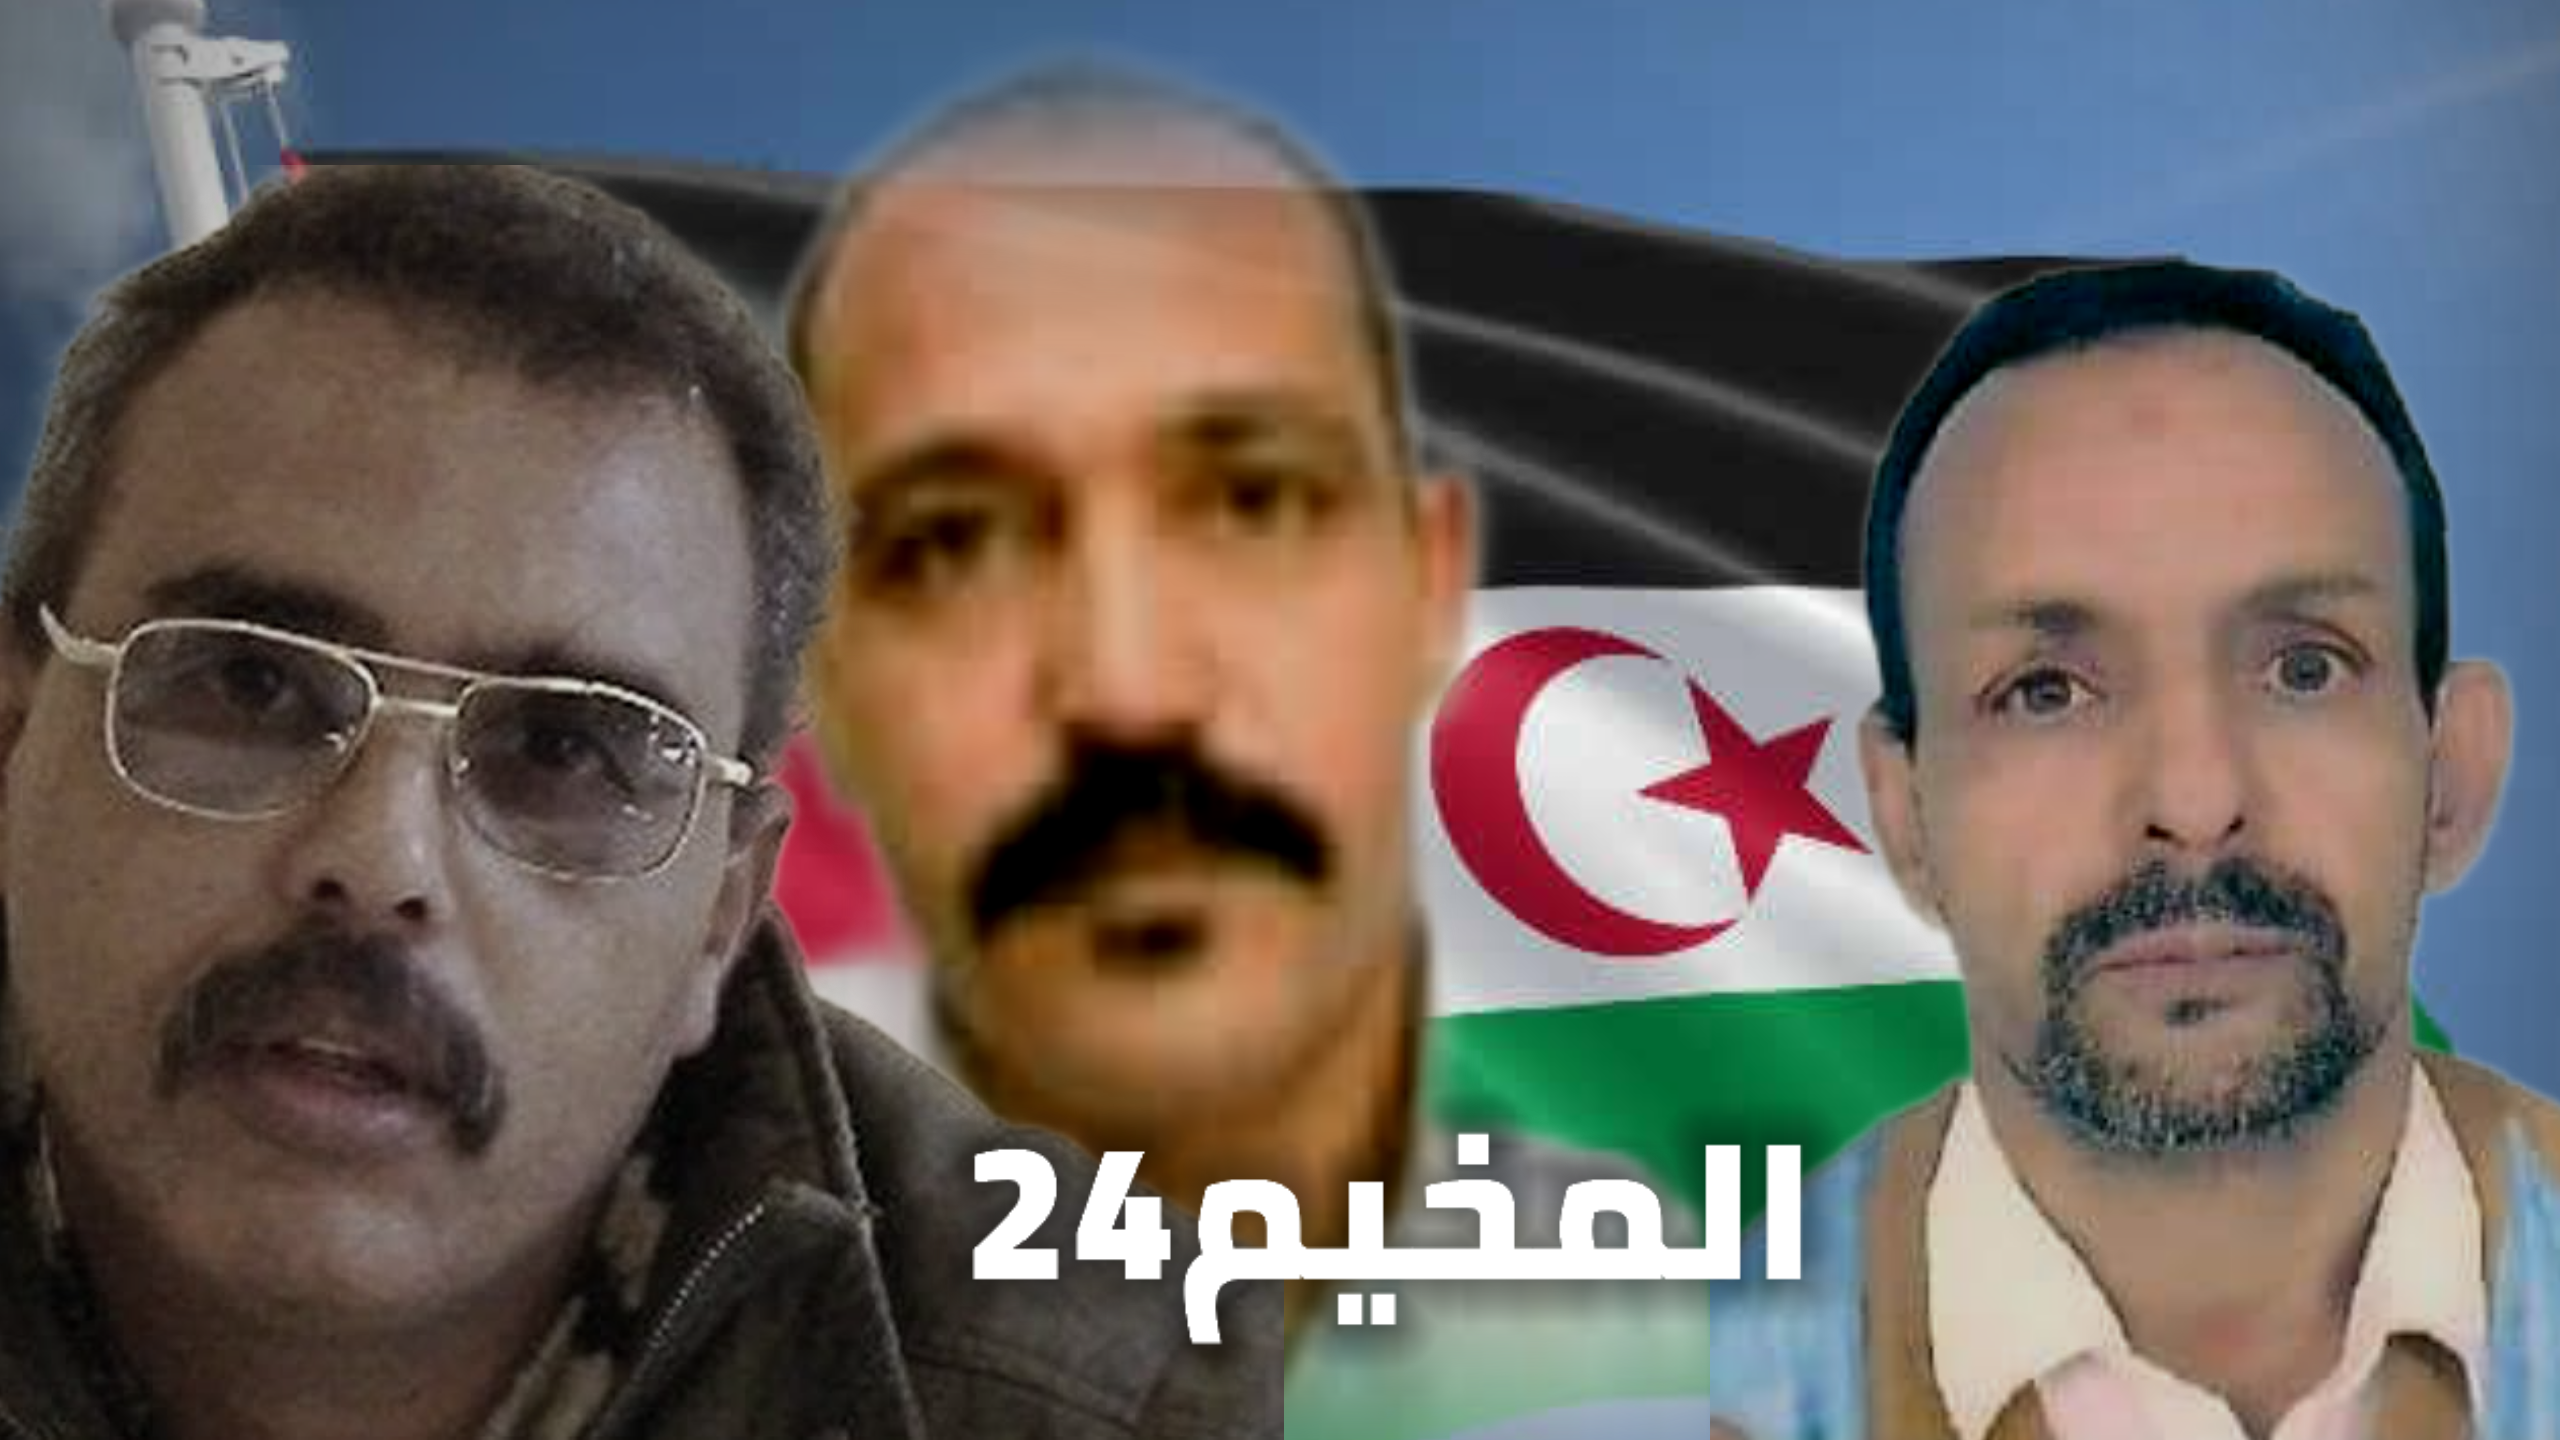 الأسرى المدنيون الصحراويون ضمن مجموعة أگديم إزيك بالسجن المحلي أيت ملول 1 يضربون إنذاريا عن الطعام.